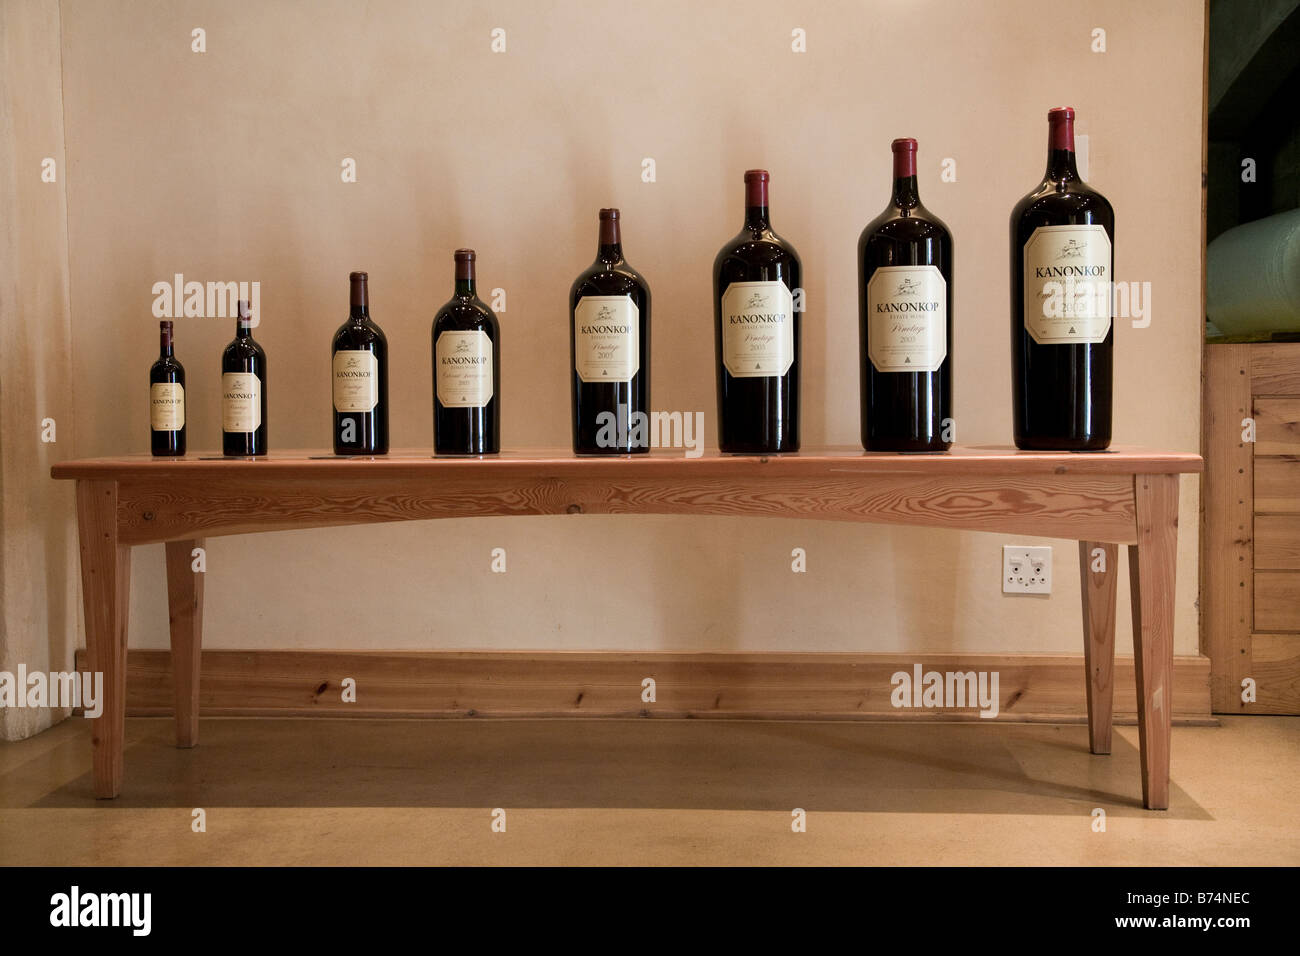 La cantina Konokop diversi formati di bottiglia di vino Foto Stock